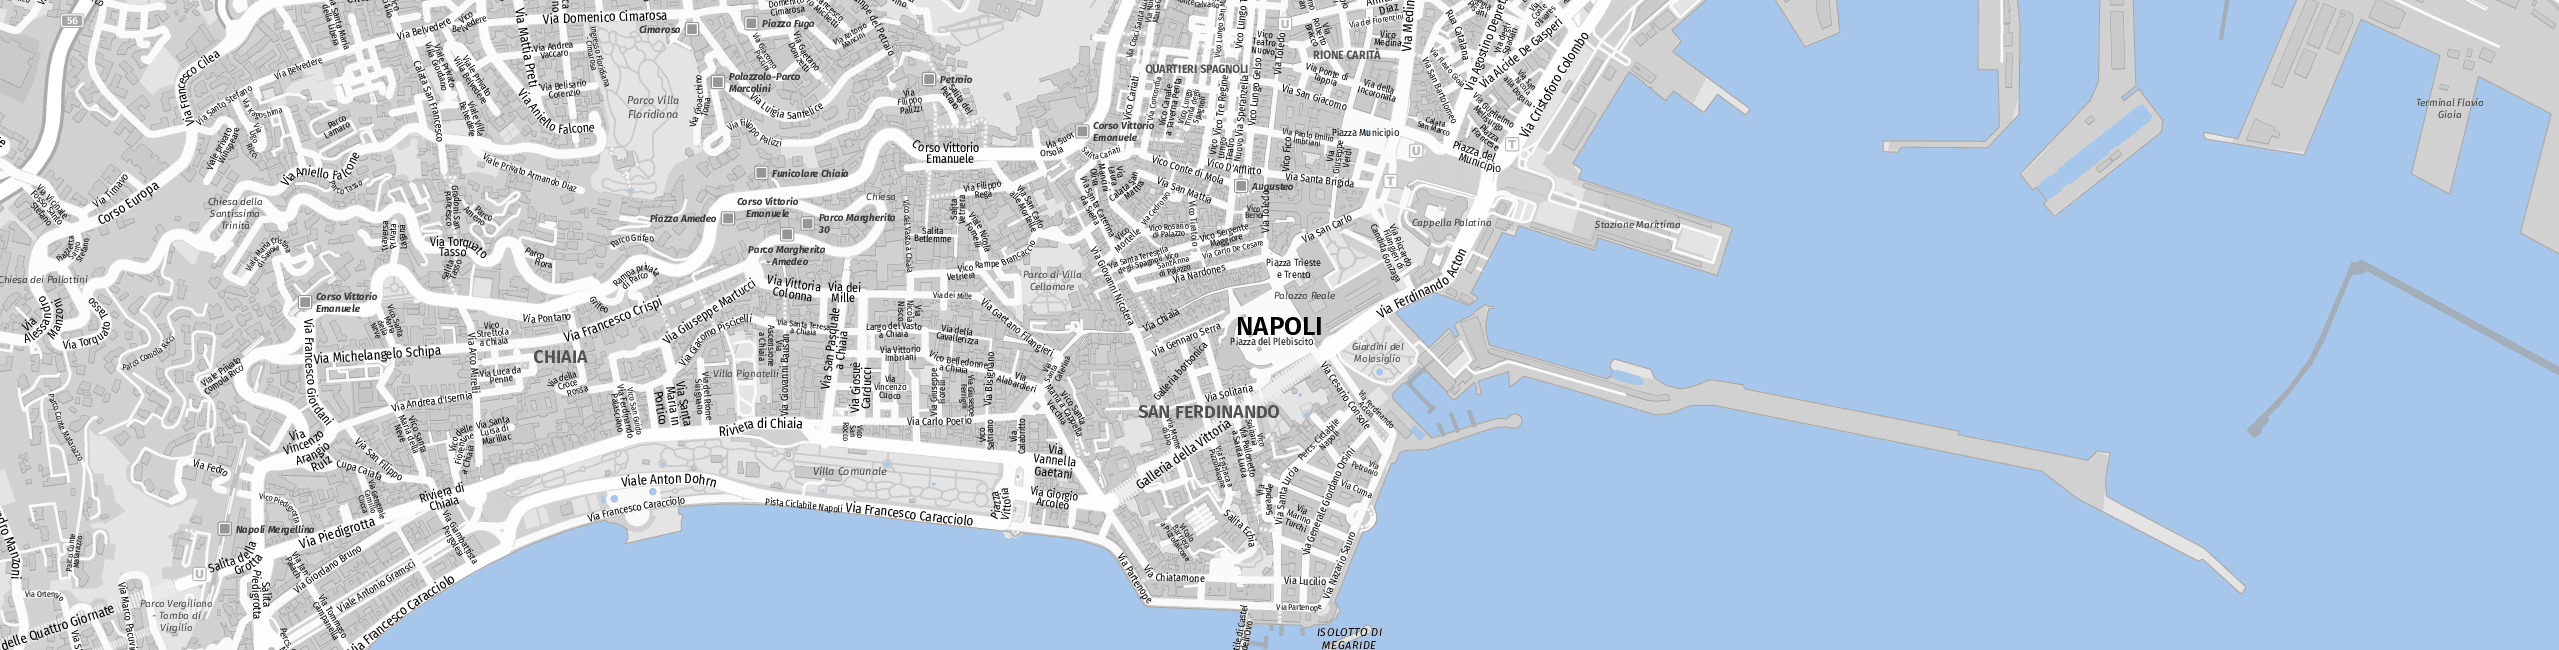 Stadtplan Napoli zum Downloaden.